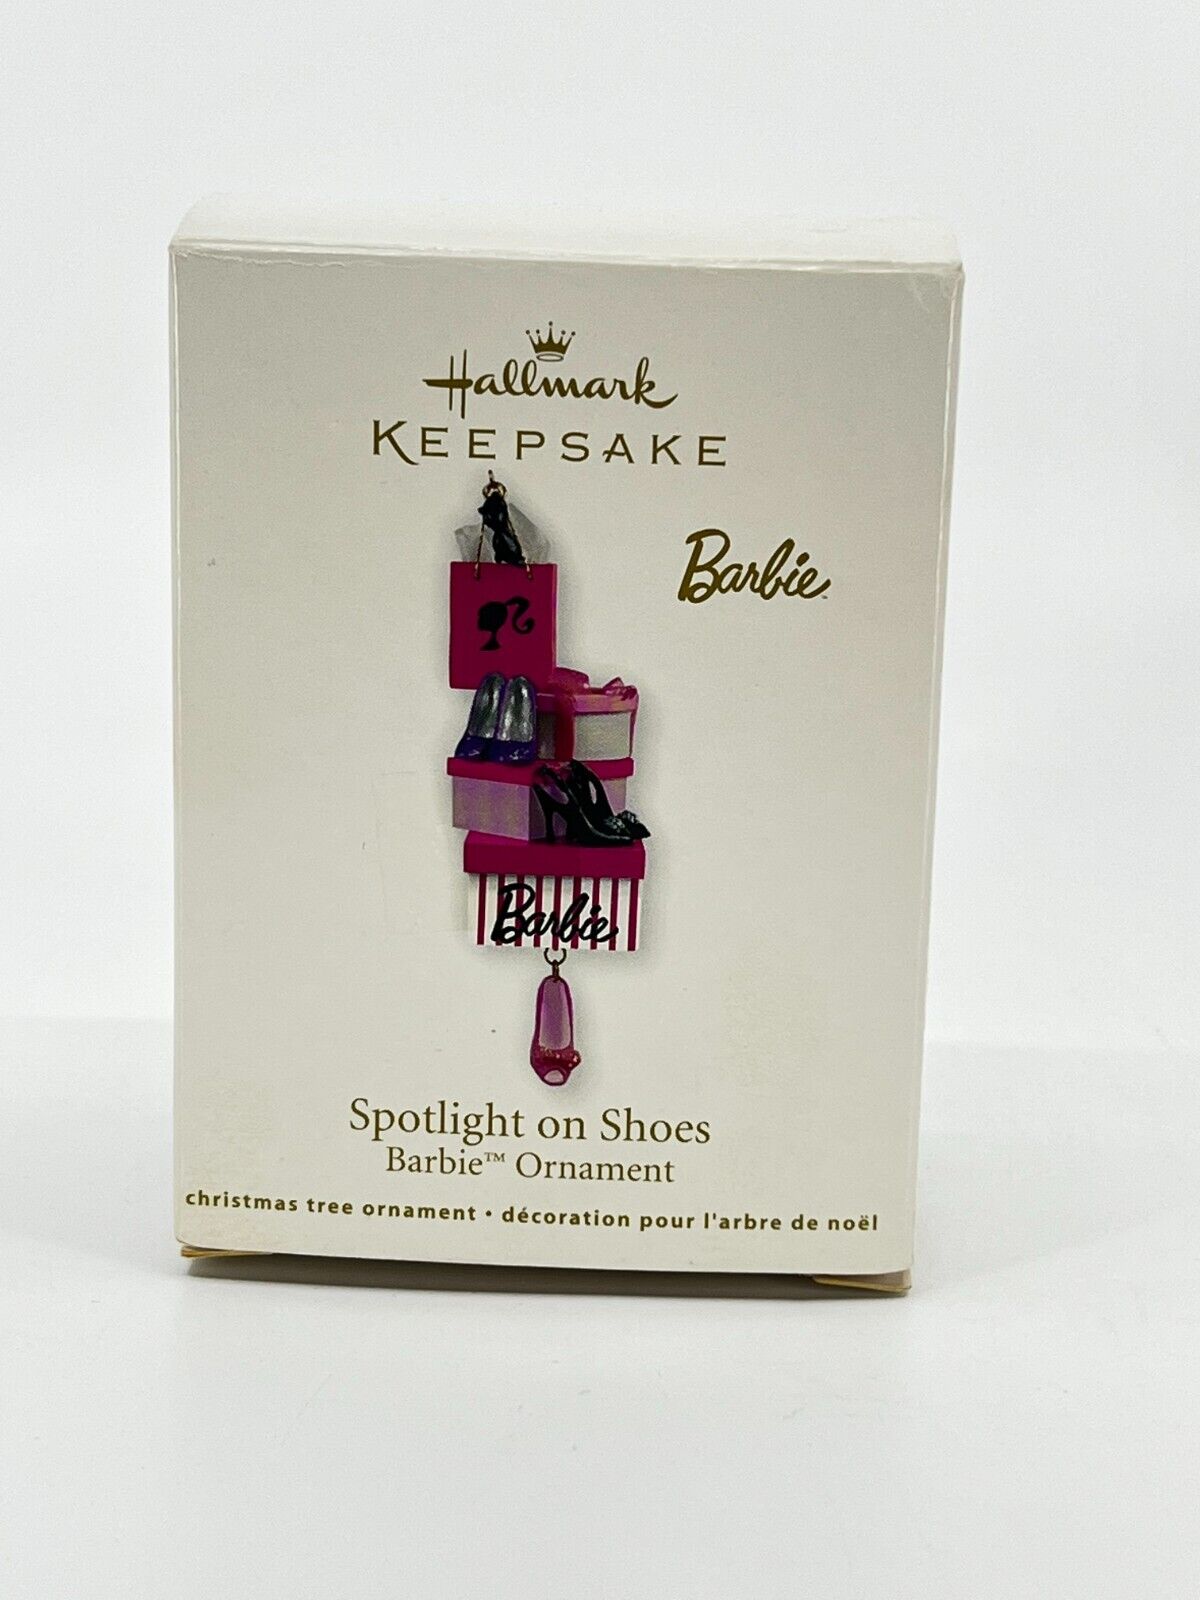 Barbie Doll Hallmark Keepsake Christmas Ornament 2011 Spotlight On Shoes NIB 